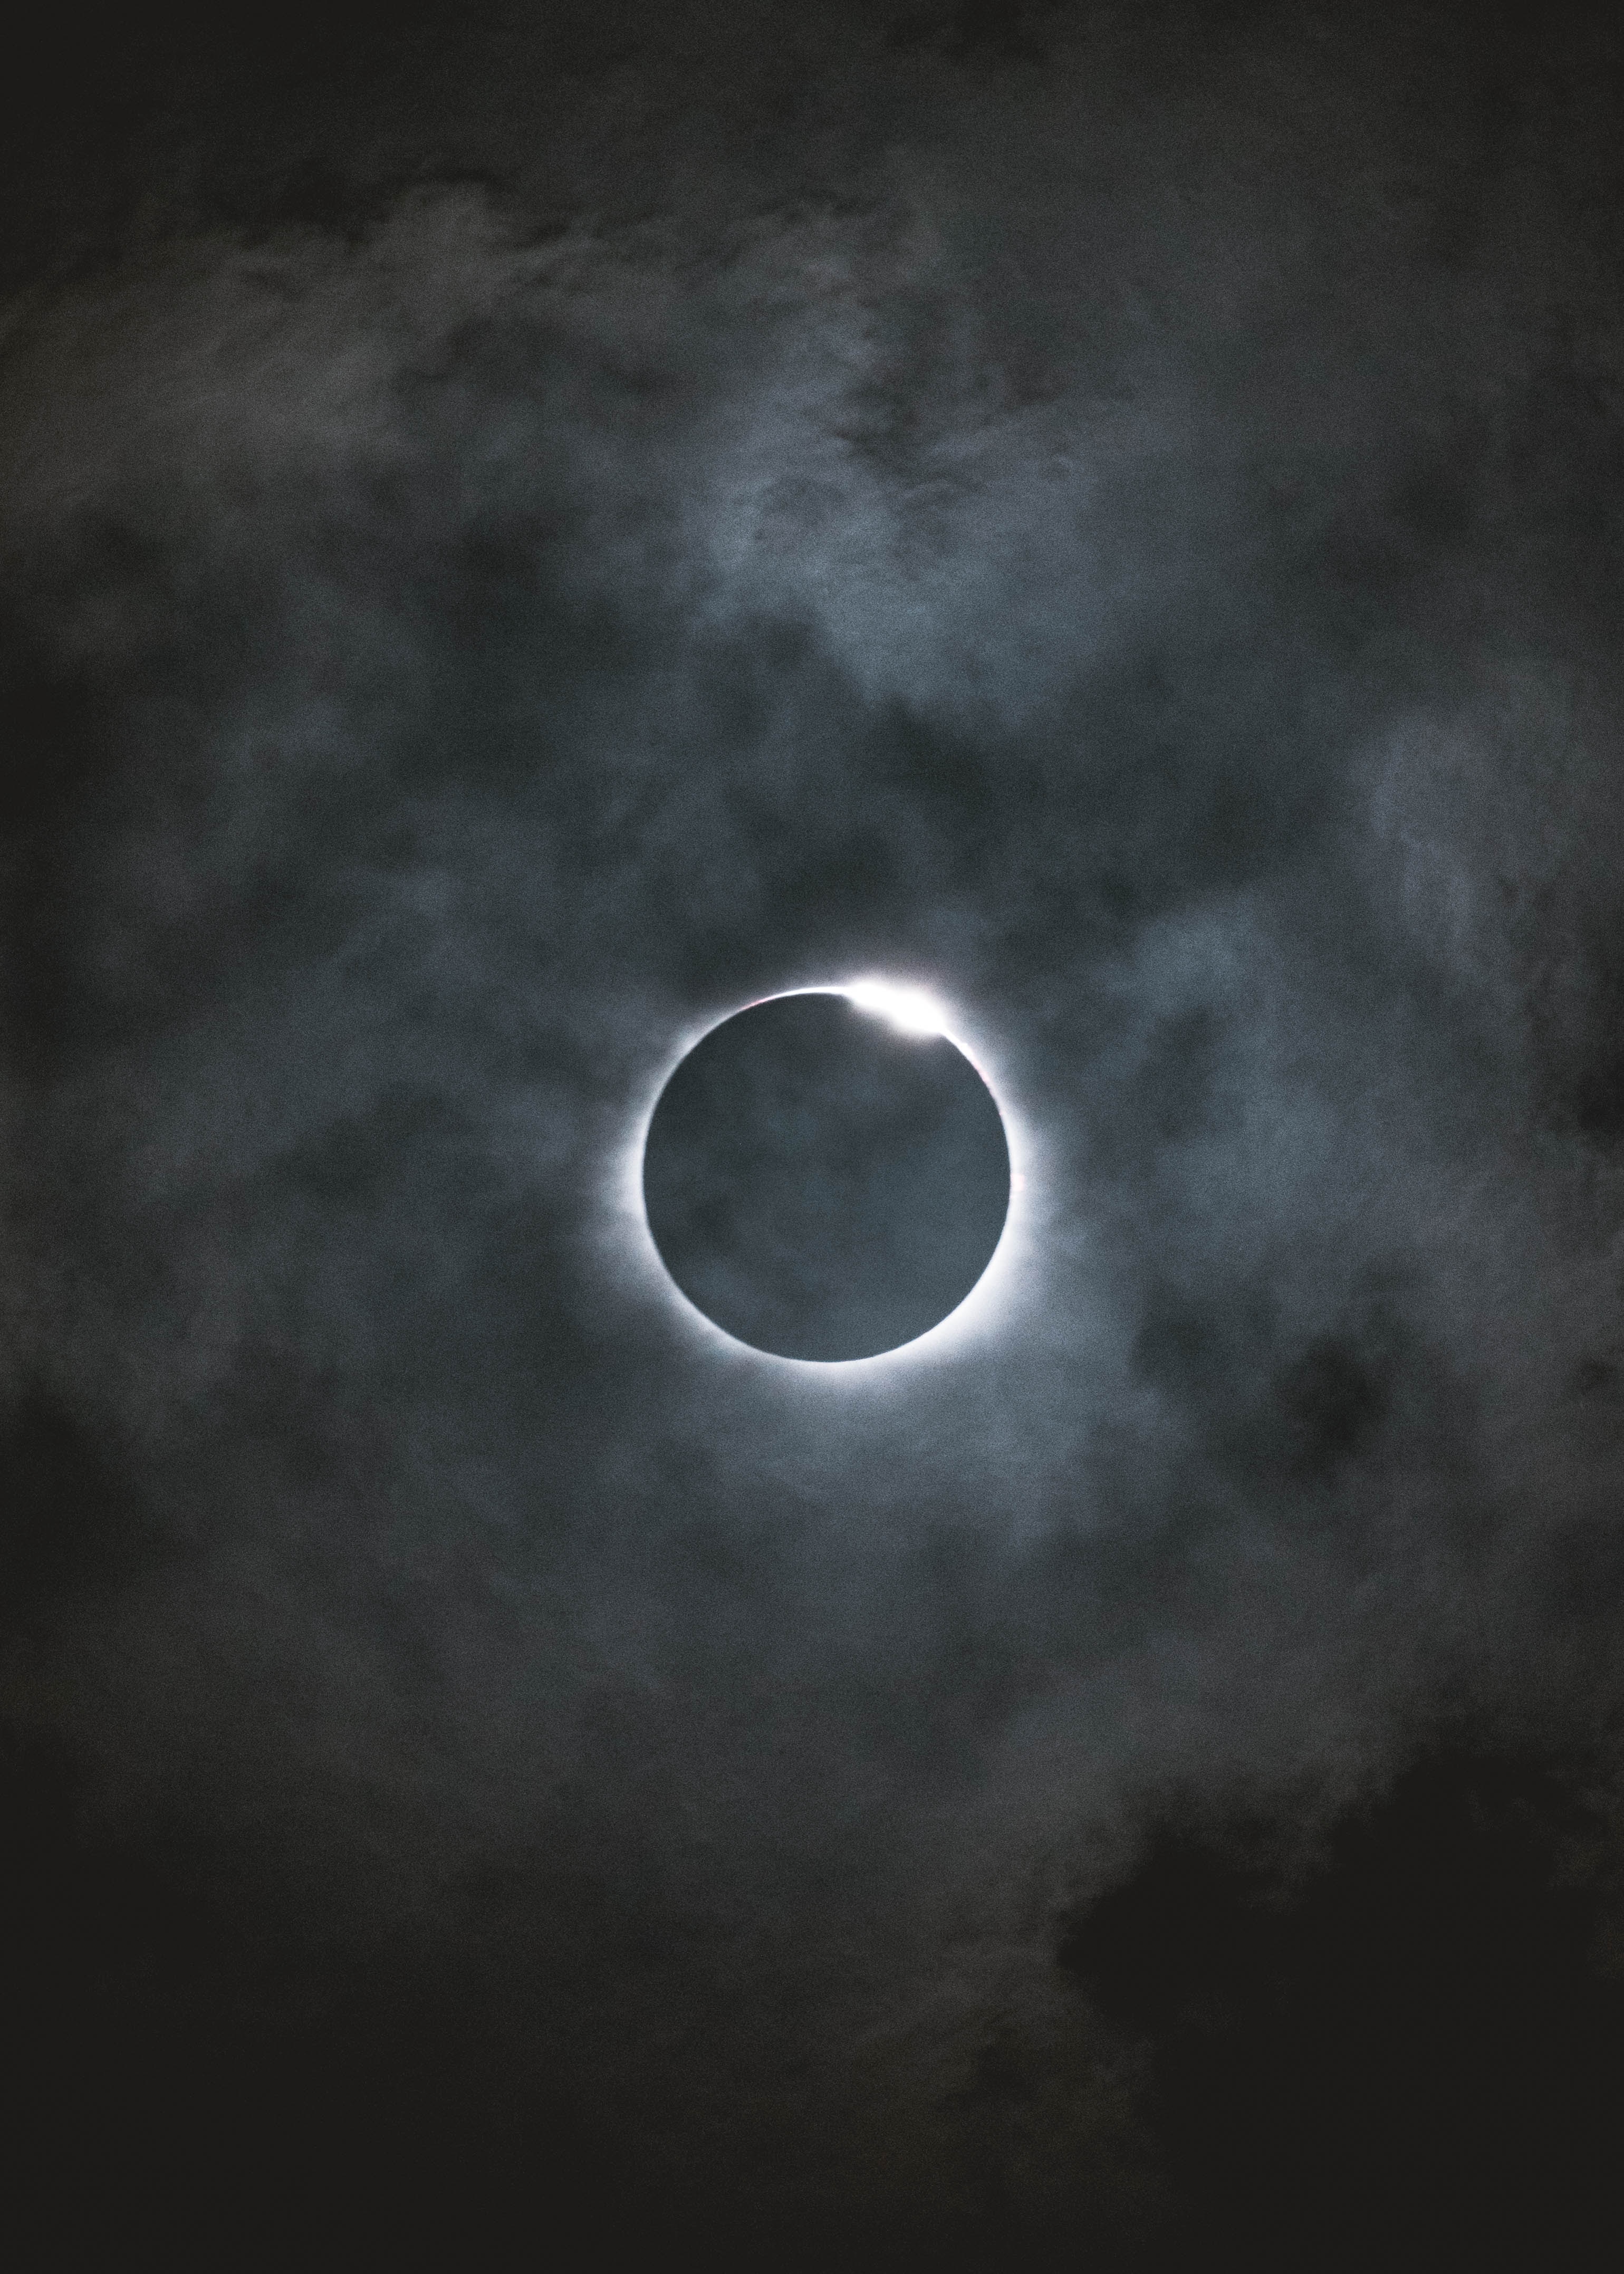 Cómo hacer lentes para ver el eclipse solar del 14 de octubre 2023?